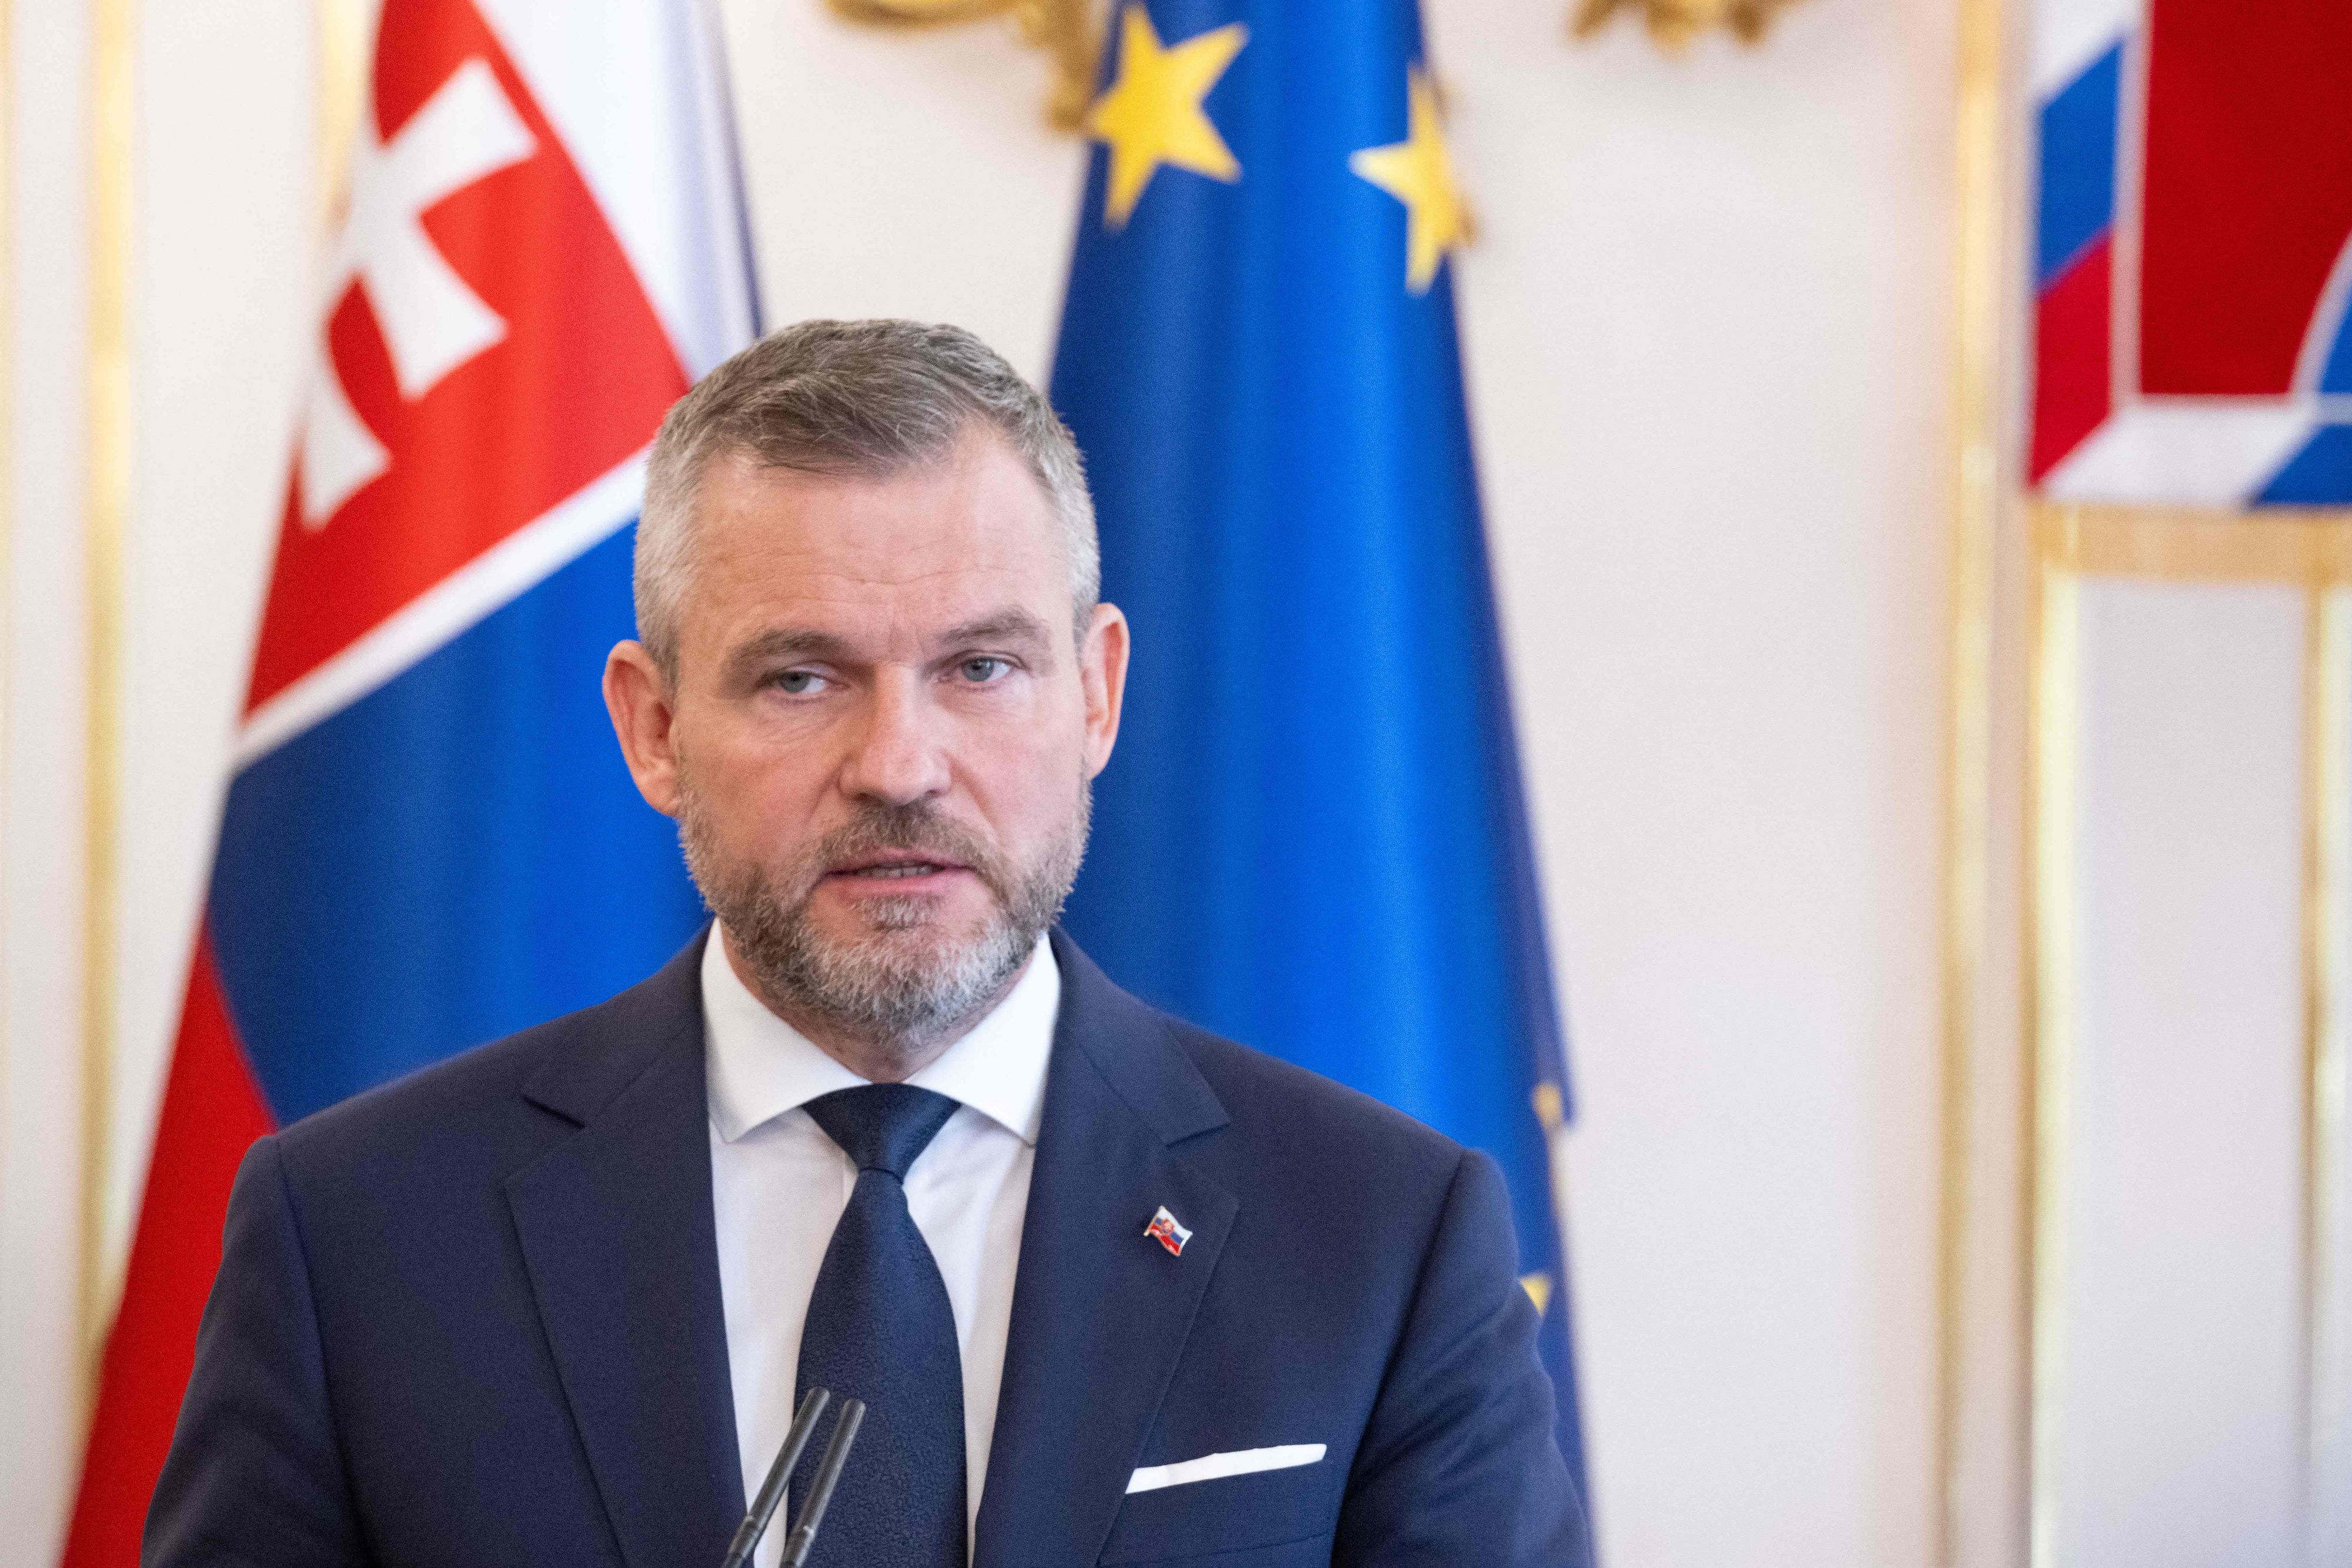 Le nouveau président slovaque promet de réunir le pays